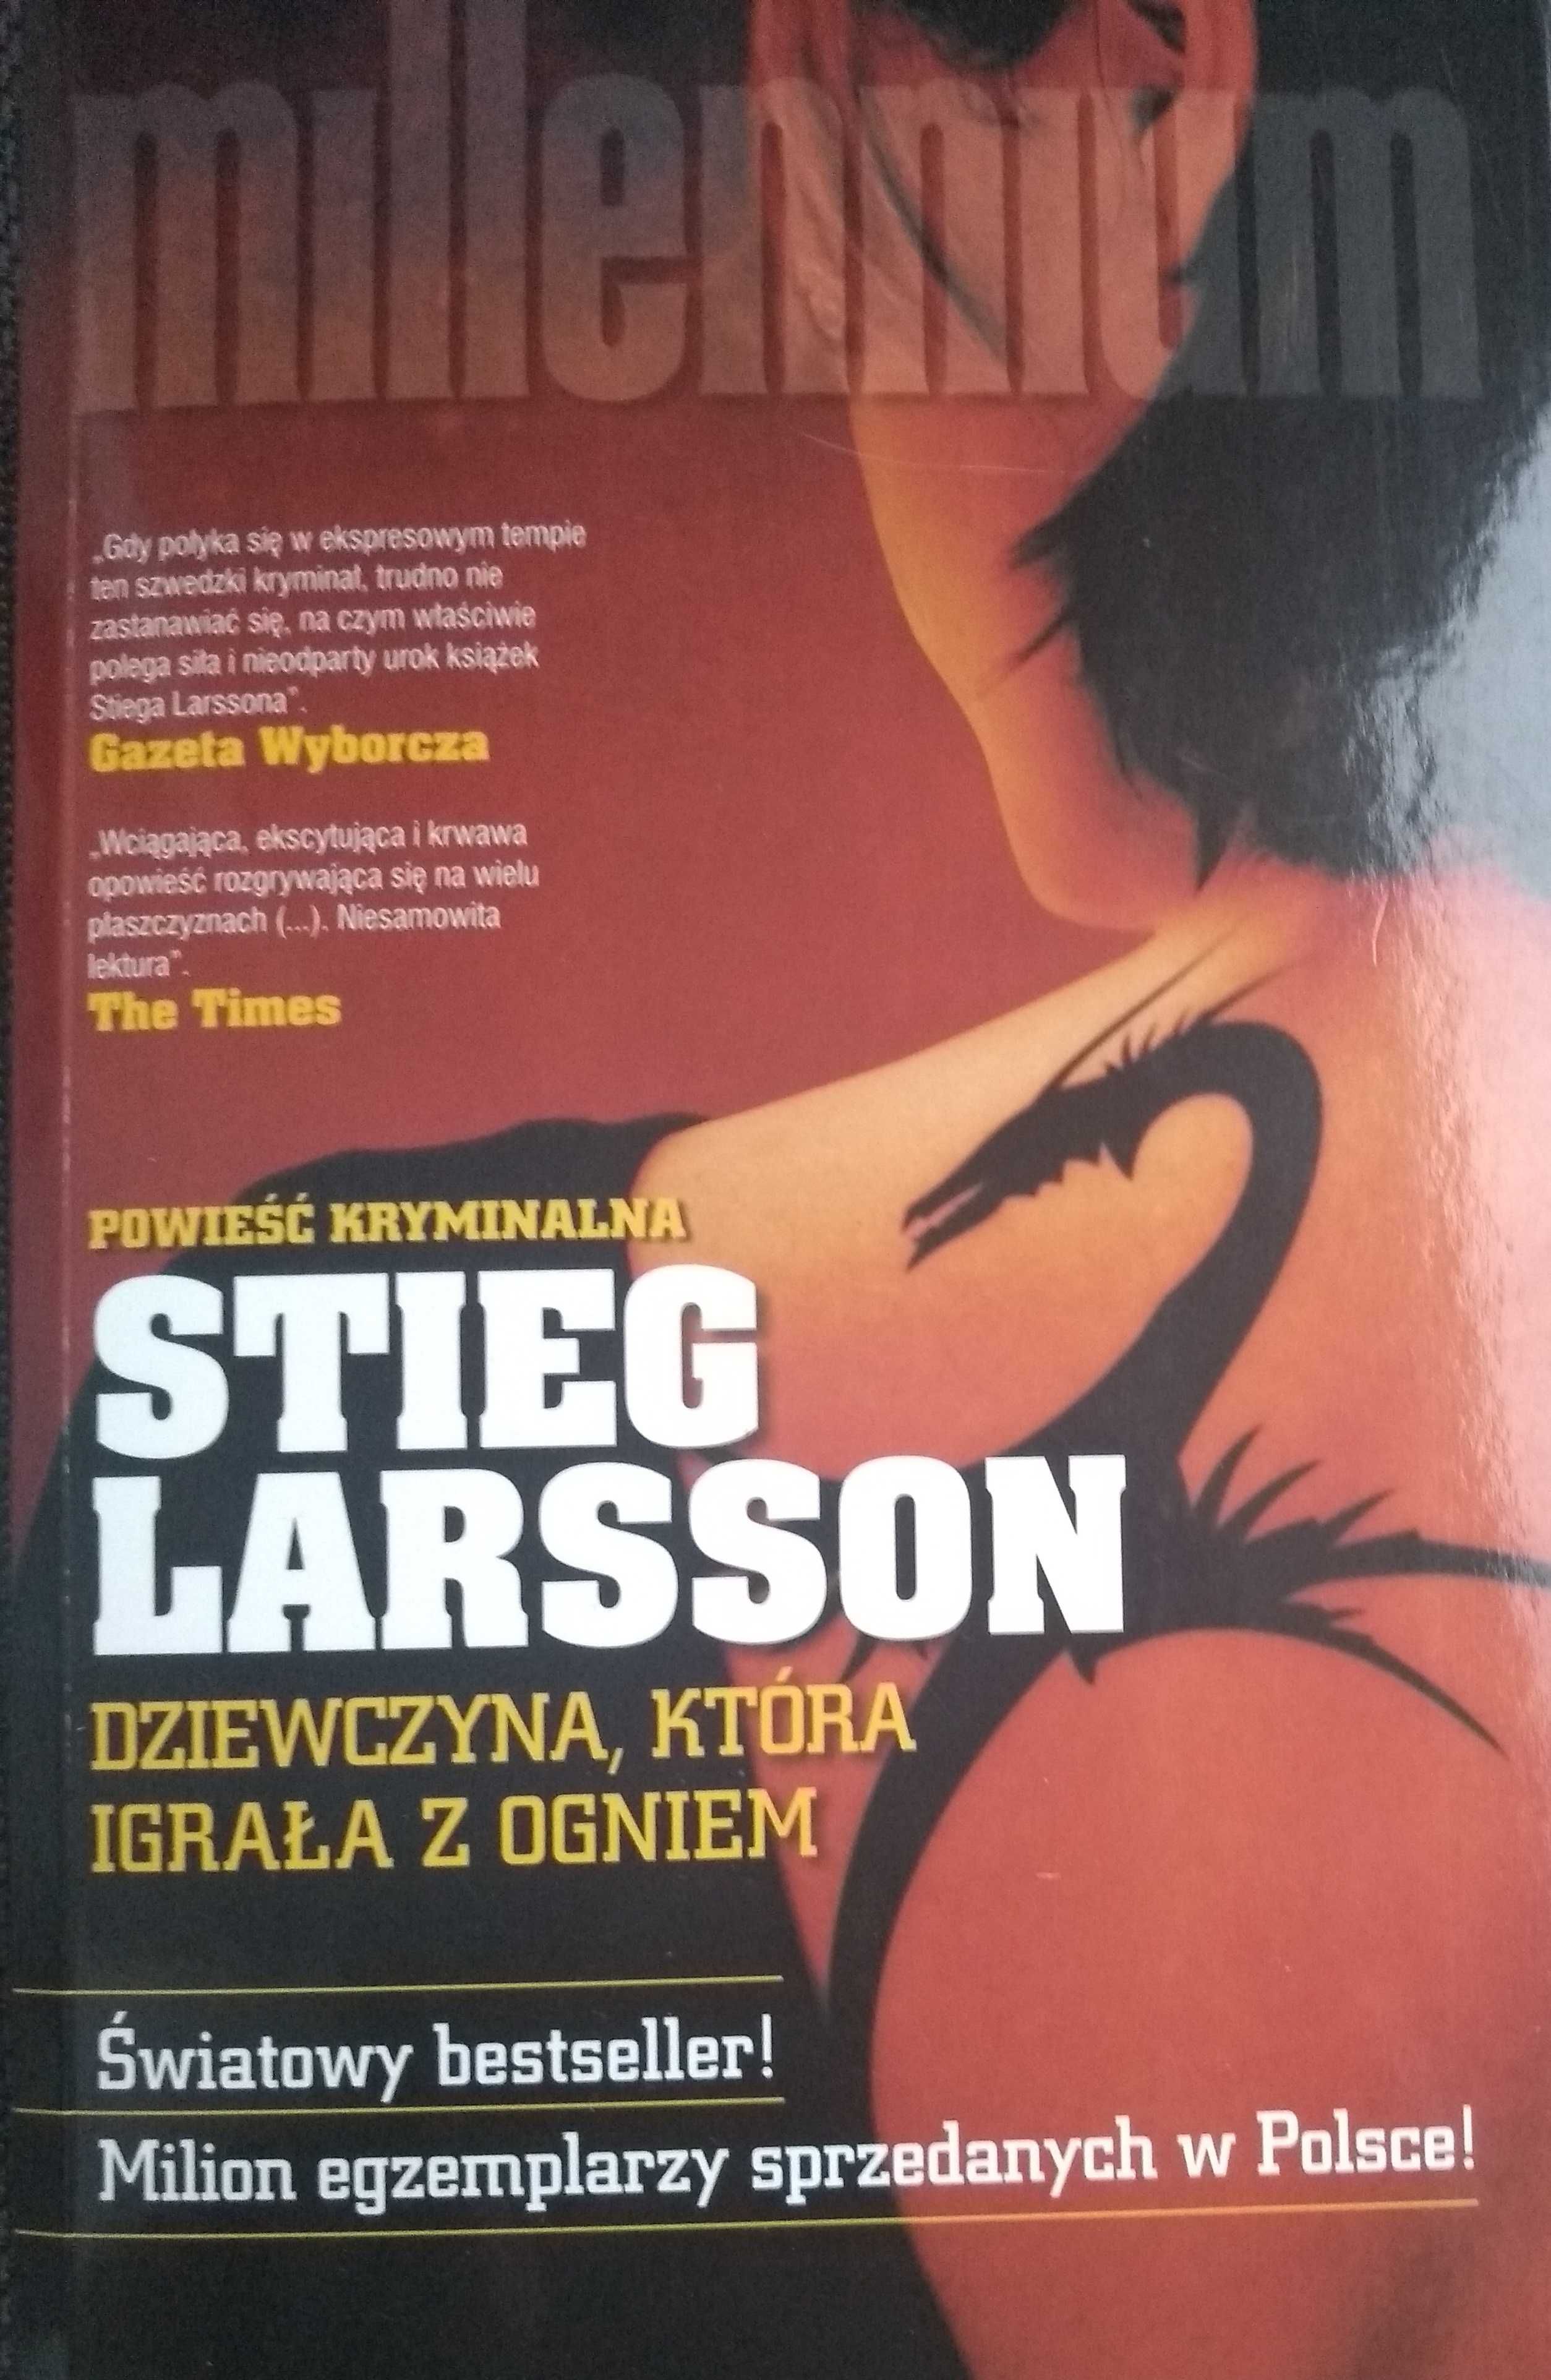 Millennium Dziewczyna, która igrała z ogniem (Stieg Larsson)